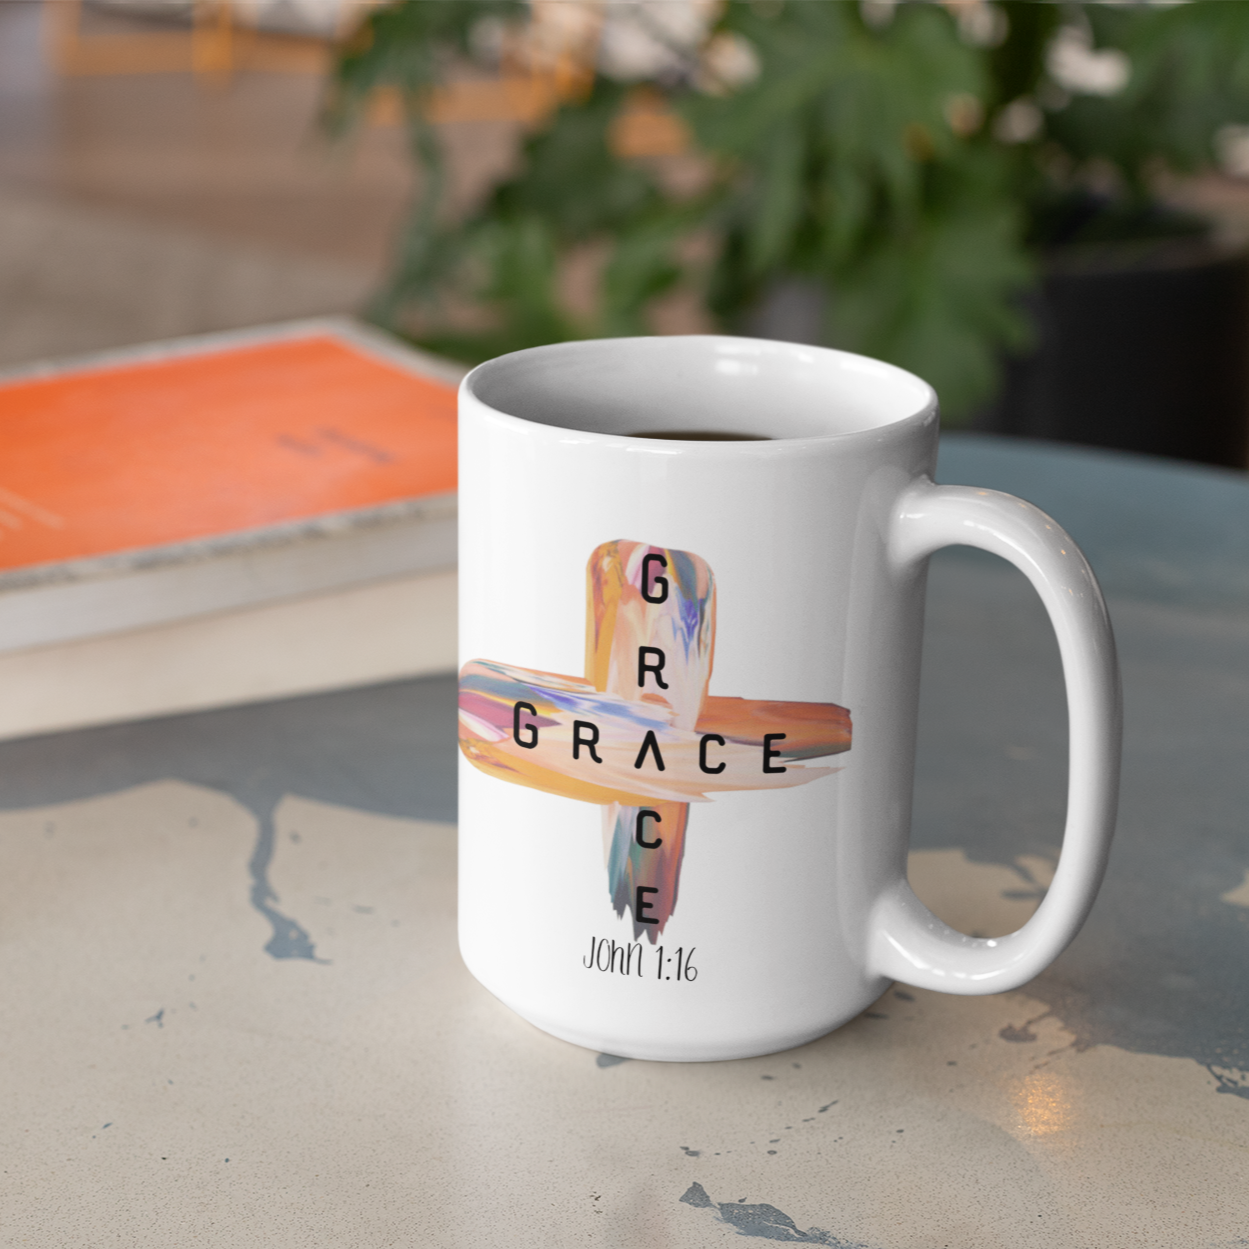 Grace Grace John 3:16 15 oz Ceramic White Mug